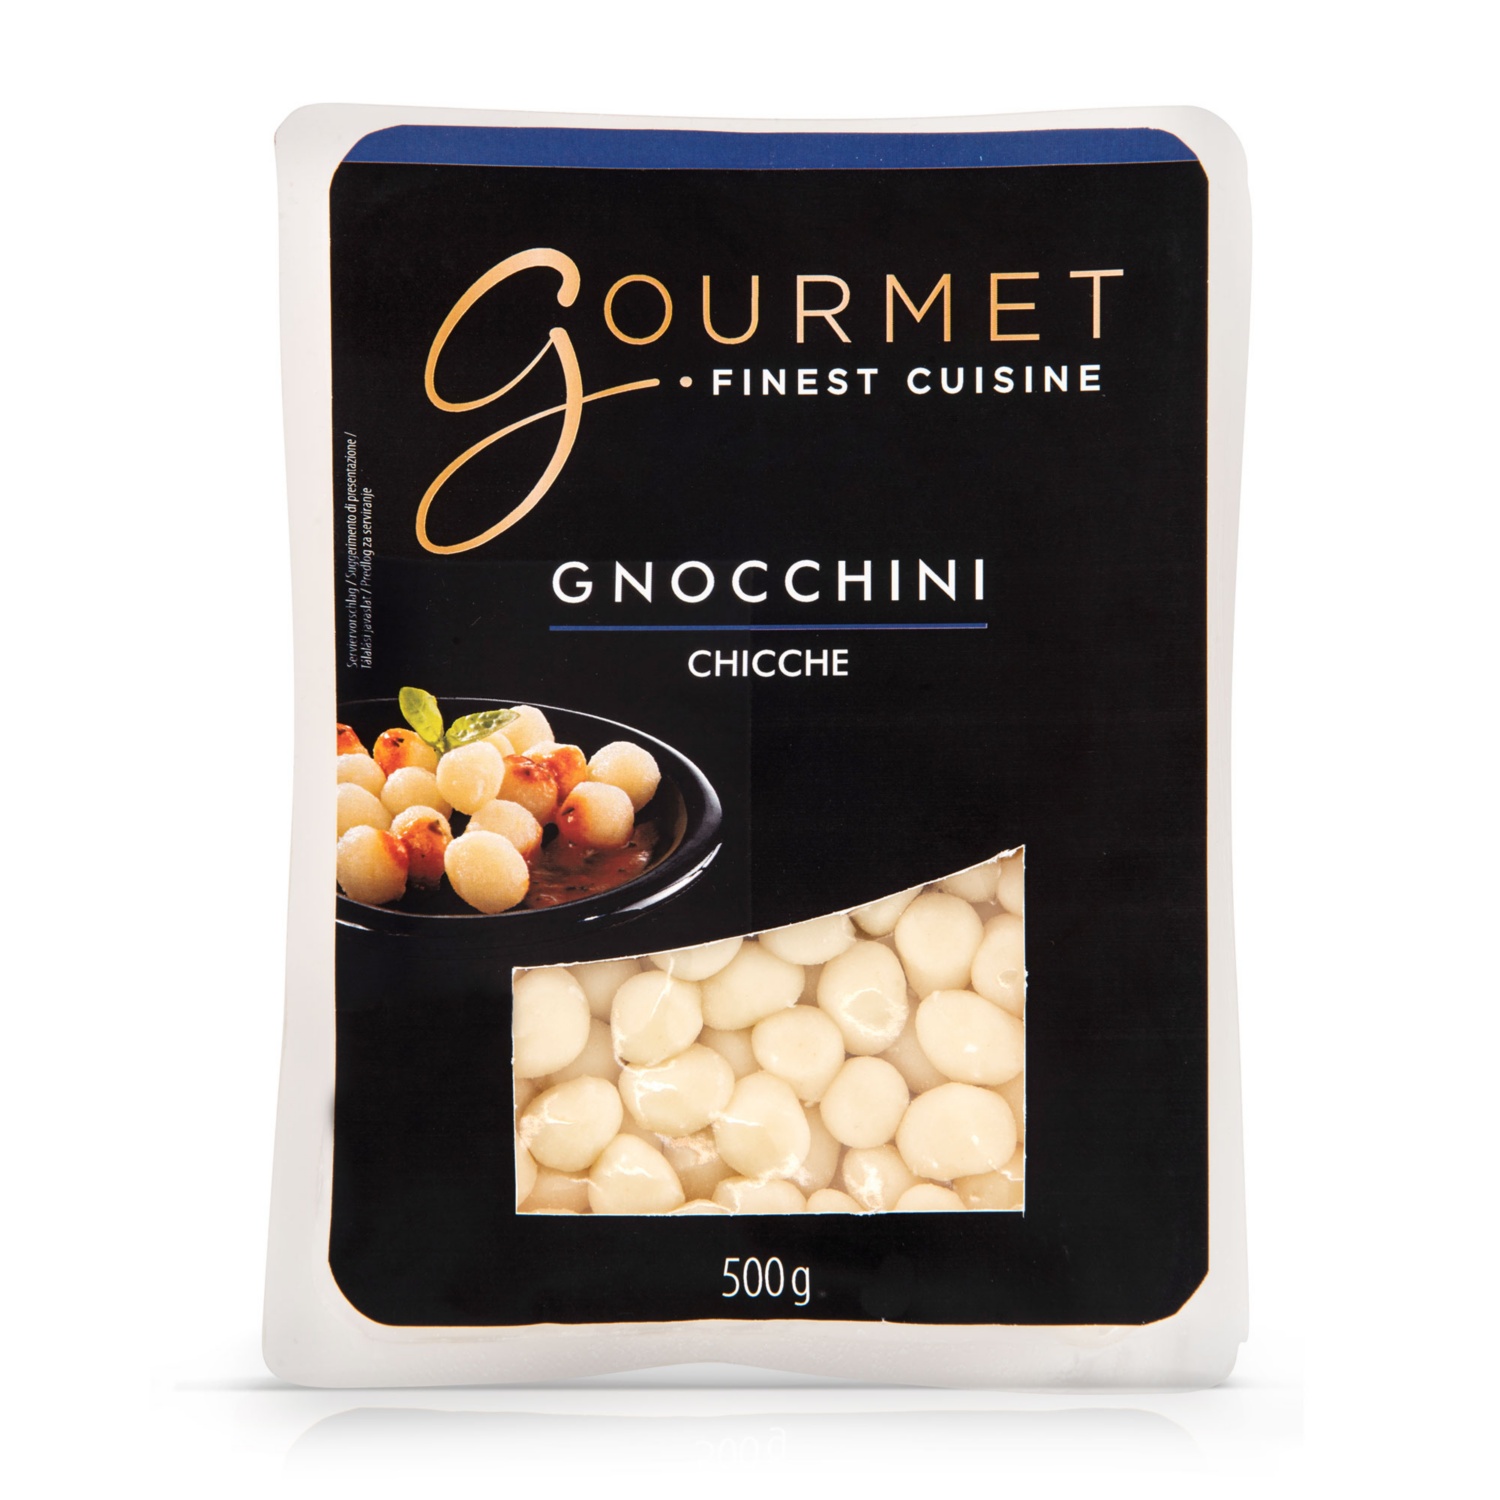 GOURMET Prémium gnocchi 500 g, gnocchini